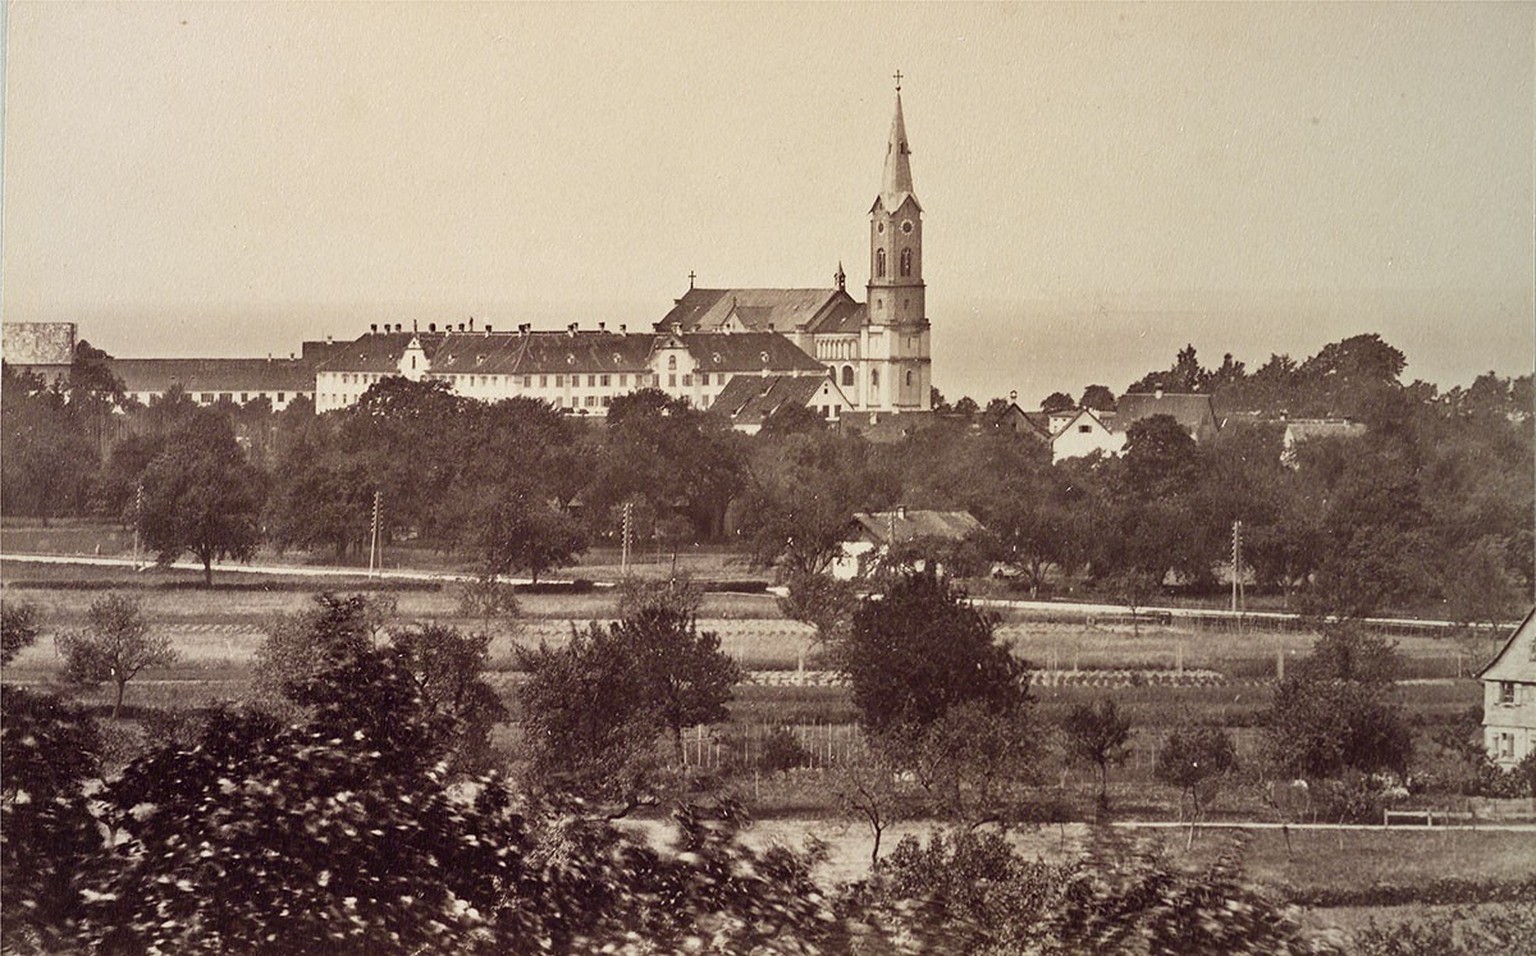 Le monastère de Mehrerau, près de Bregenz, vers 1890. Zwyssig y vécut ses derniers mois.
http://doi.org/10.3932/ethz-a-000034442